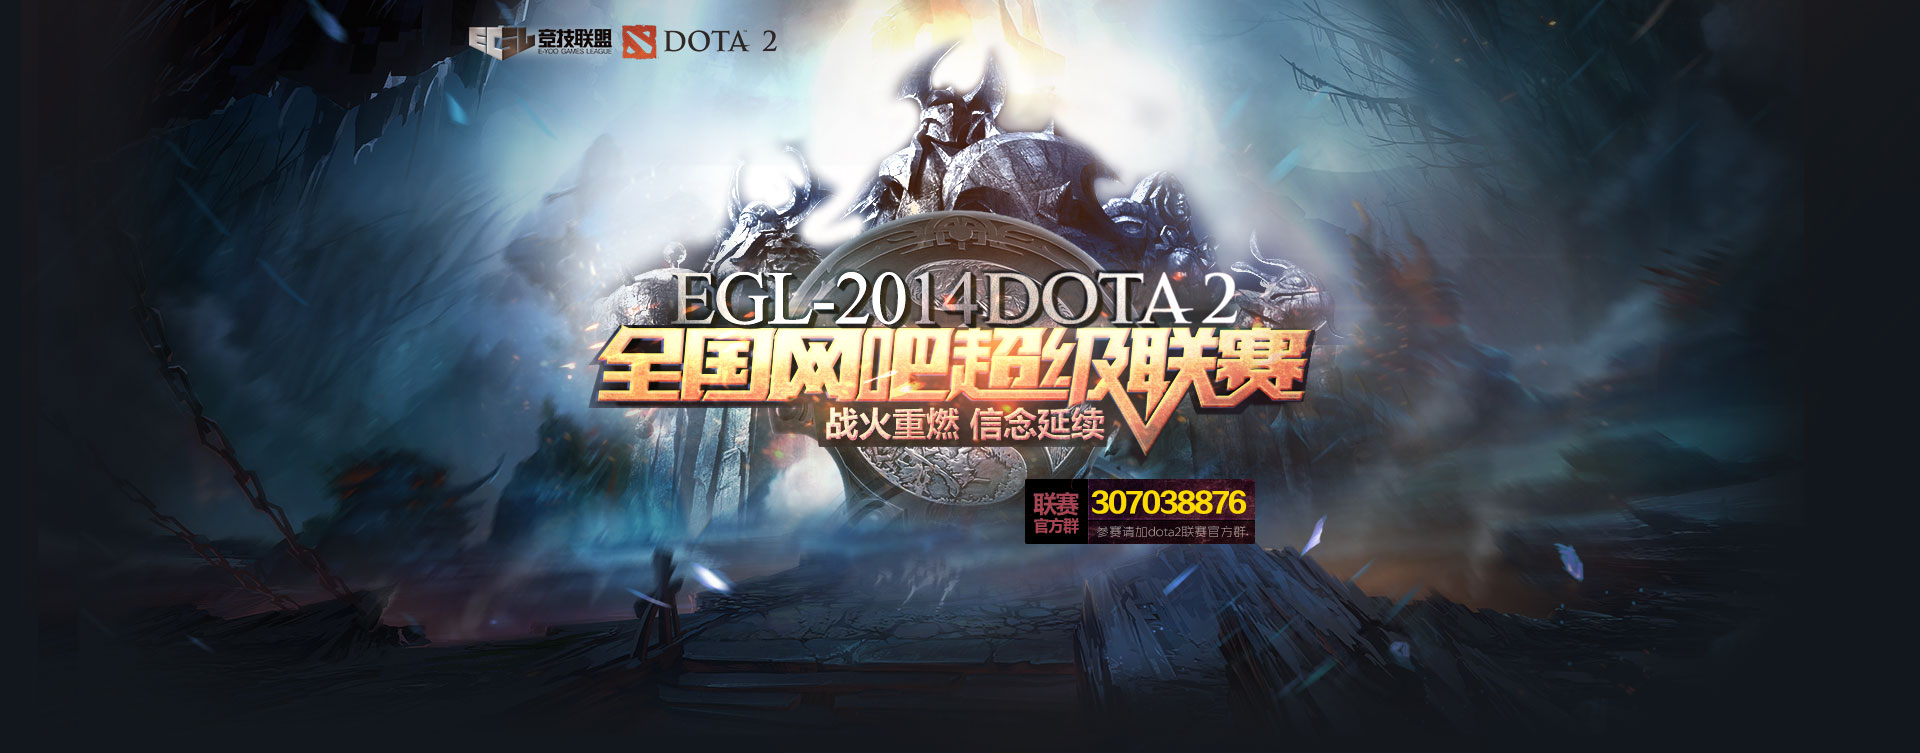 EGL-2014DOTA2全国网吧超级联赛